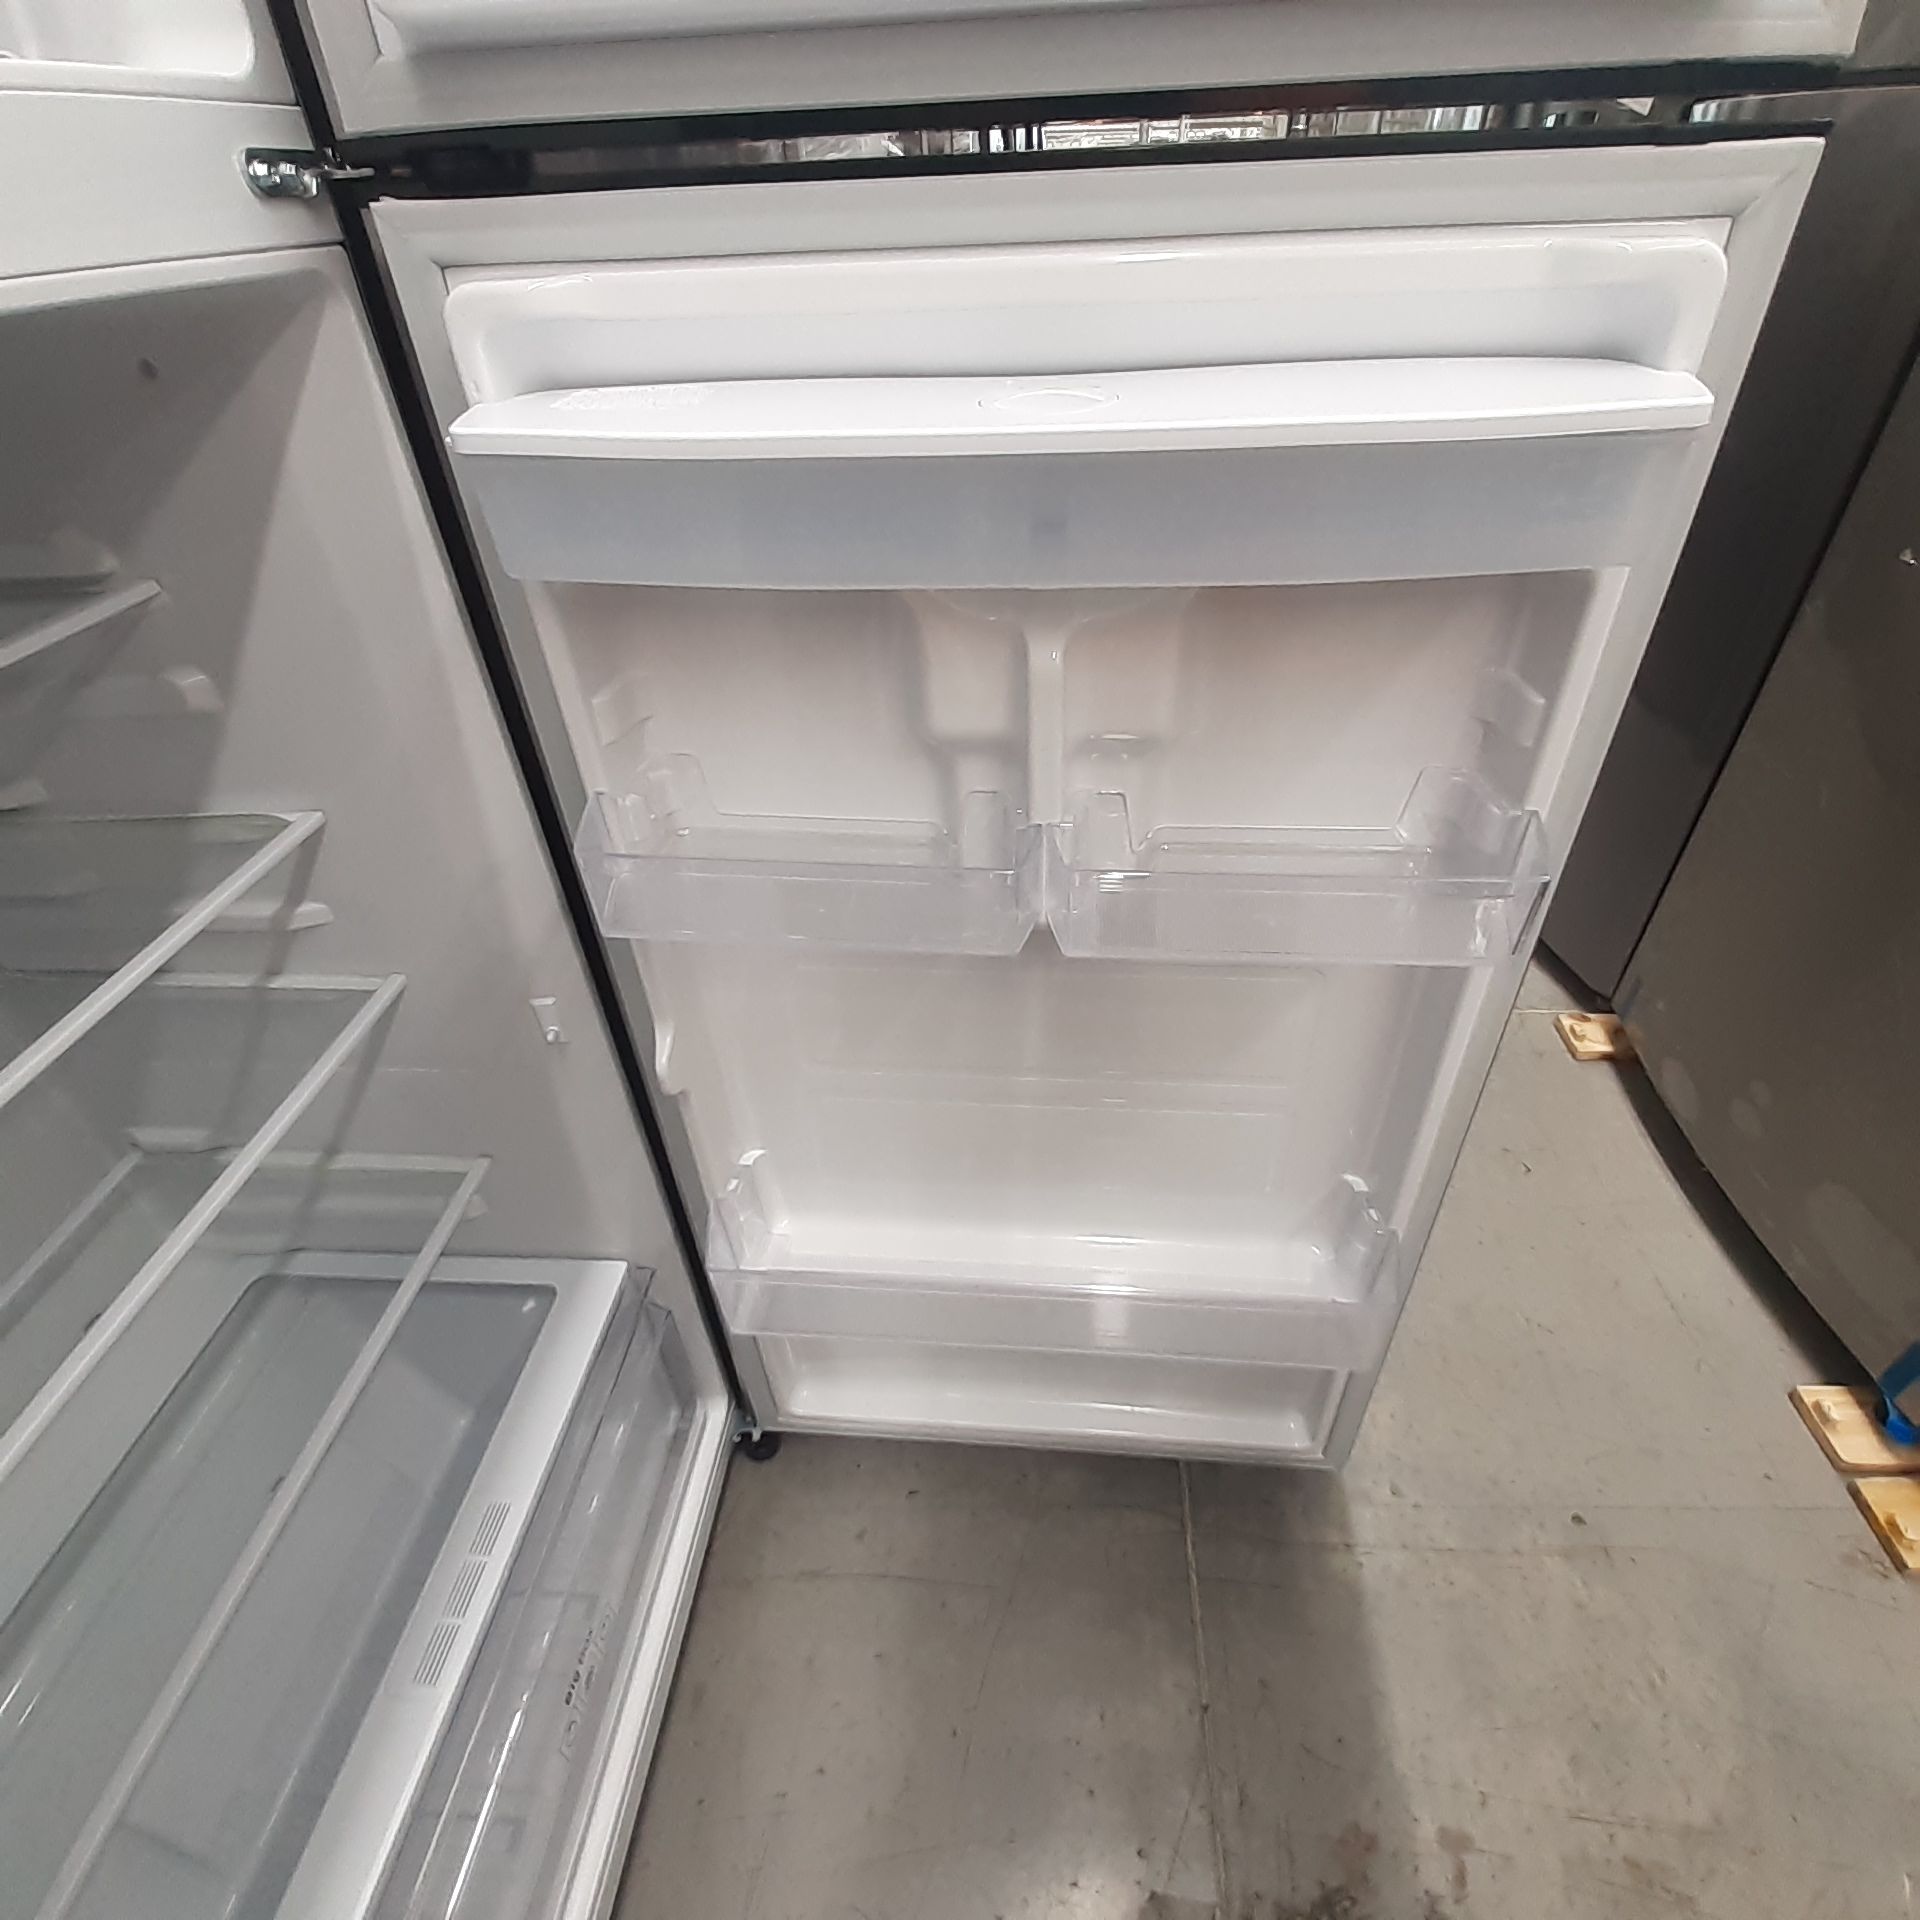 Lote De 2 Refrigeradores: 1 Refrigerador Marca Mabe, 1 Refrigerador Marca Winia, Distintos Modelos - Image 13 of 23